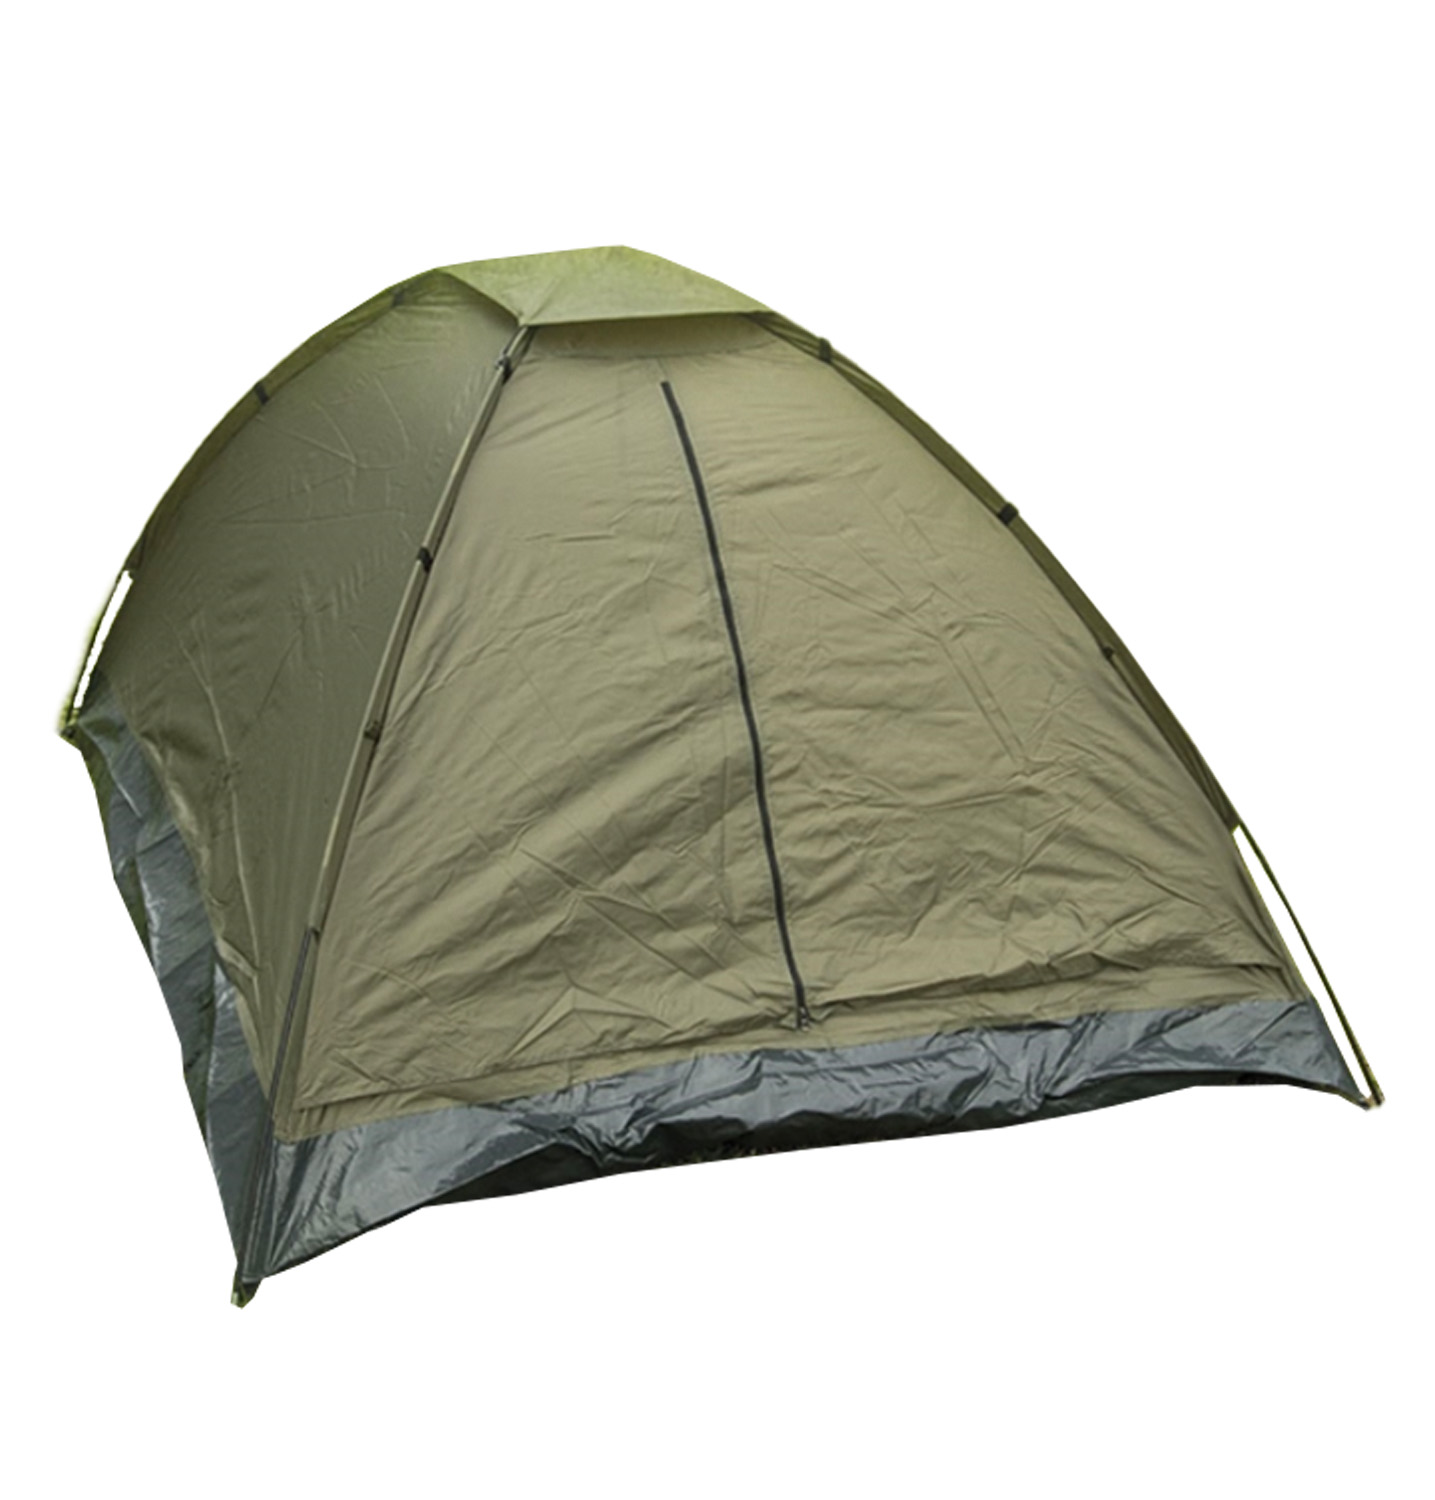 Tente pour deux personnes Igloo standard - 800mm